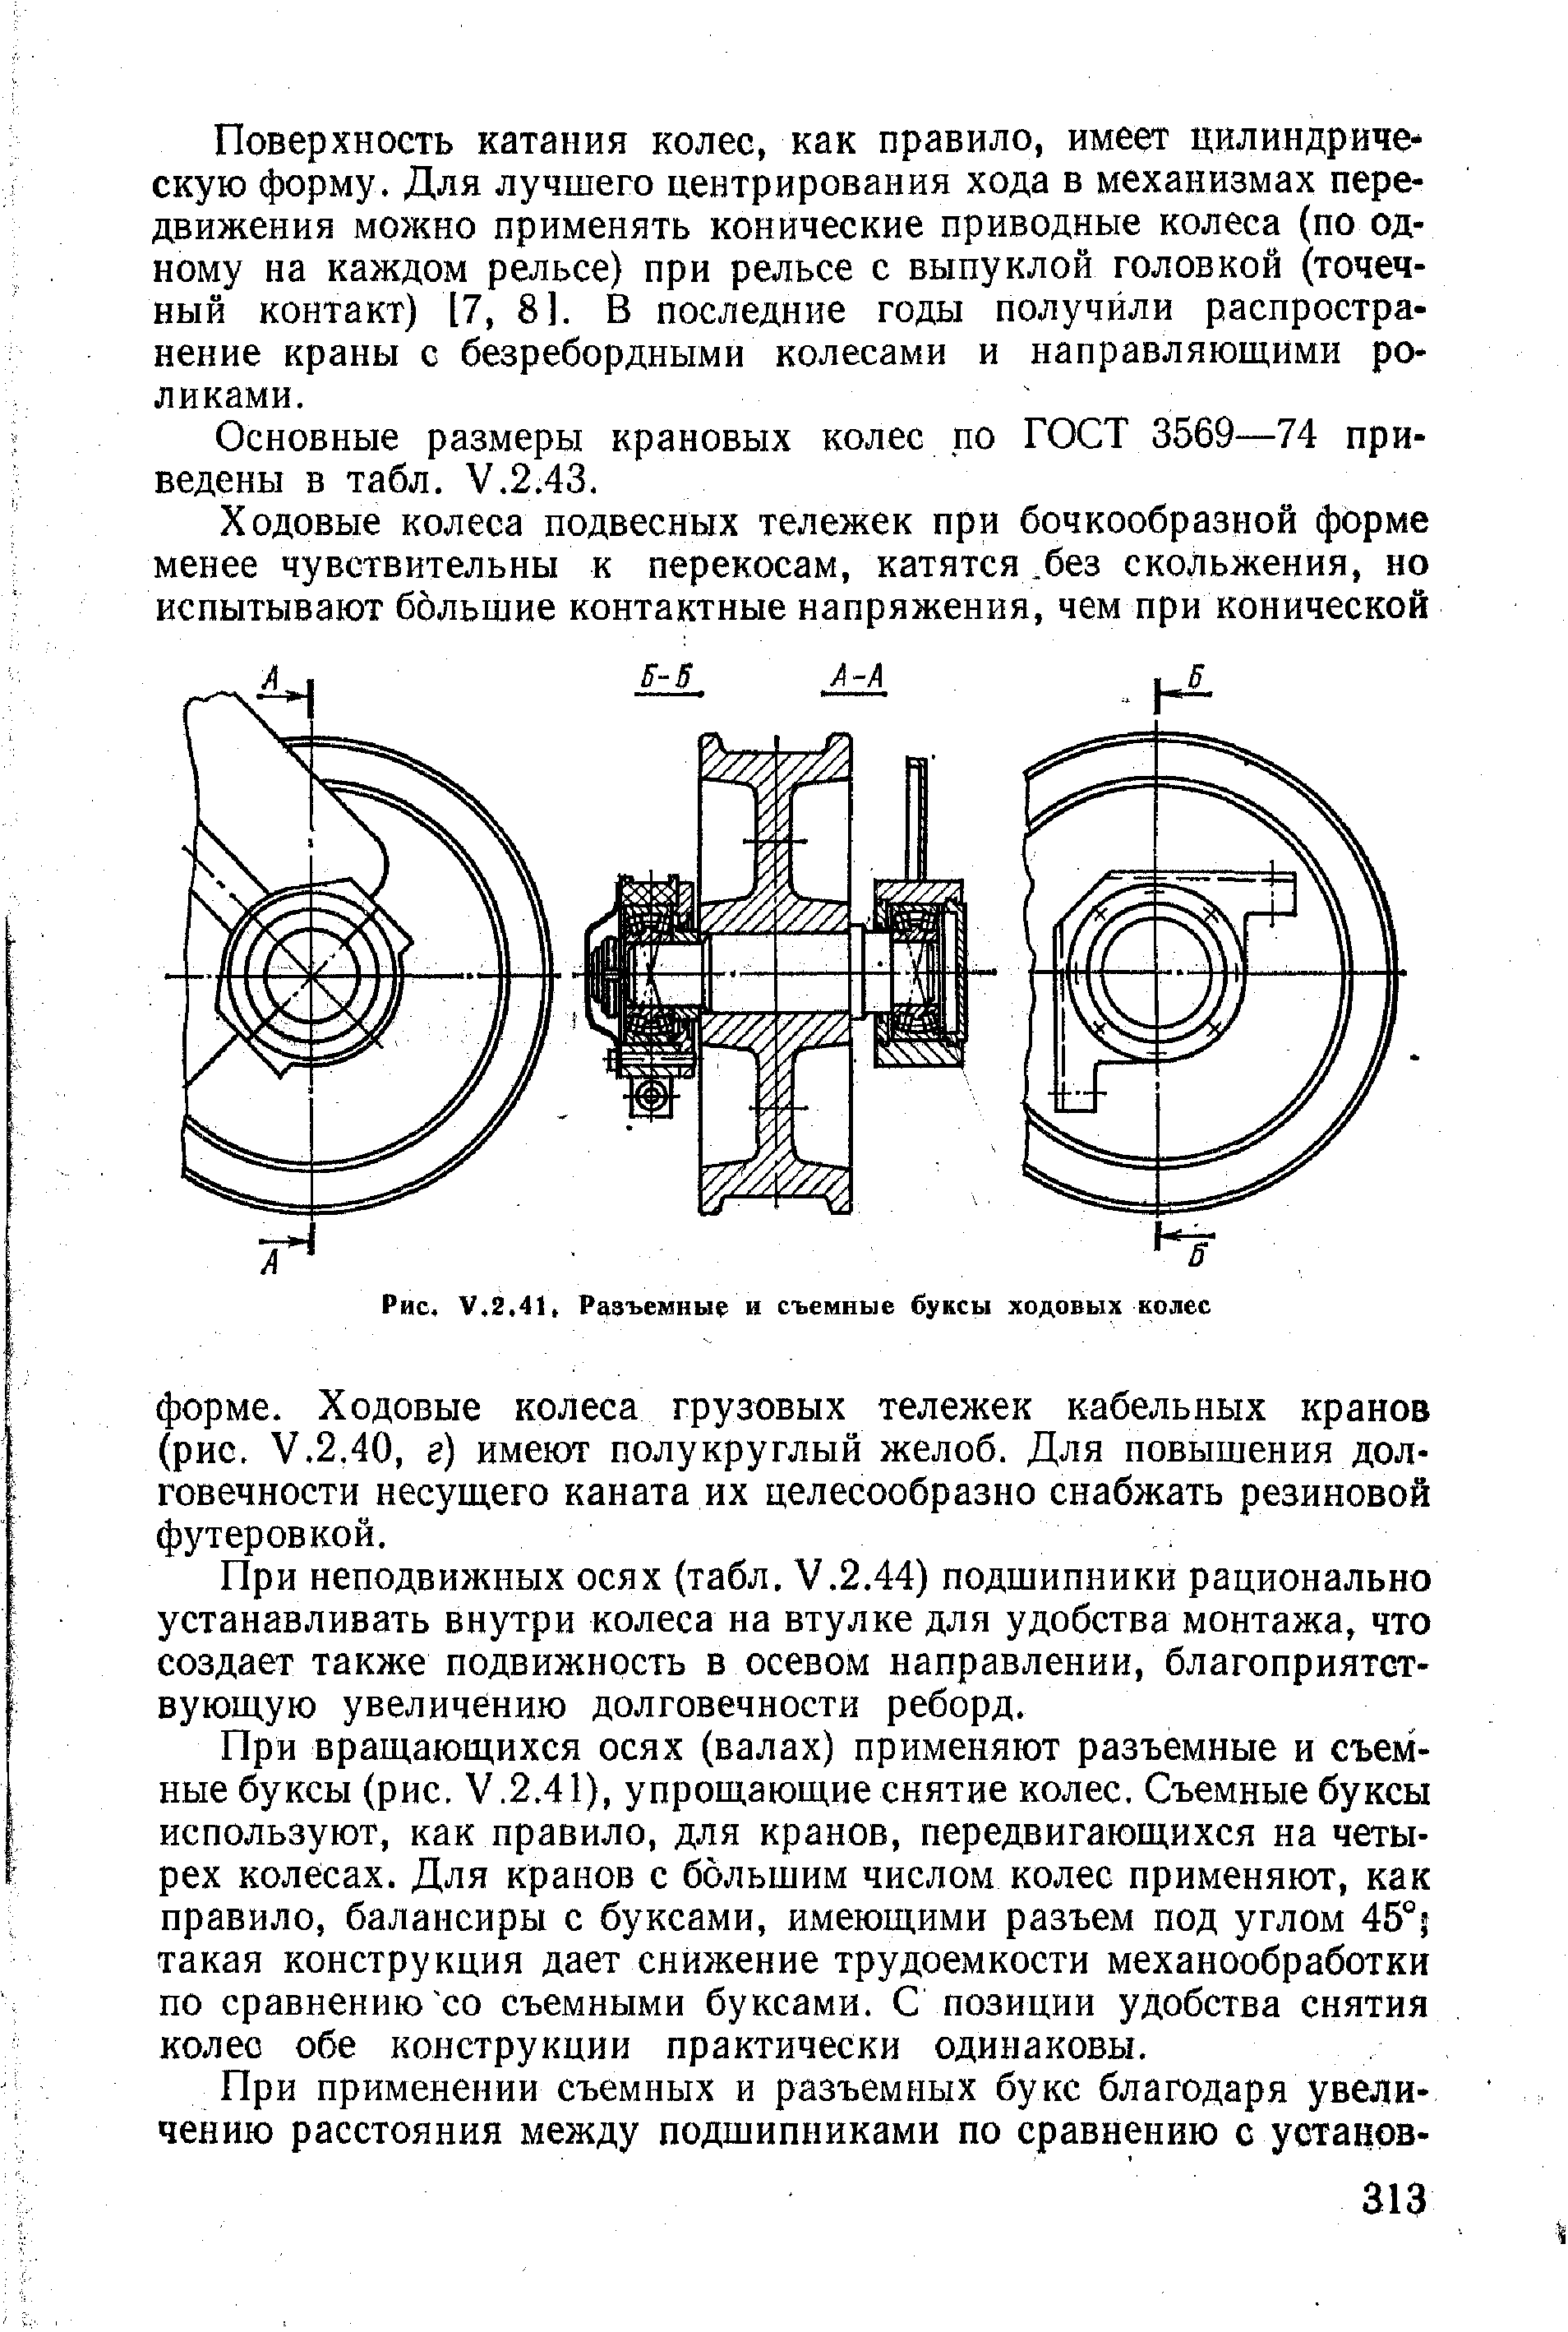 Рис. V.2.41, Разъемные и съемные буксы ходовых колес
